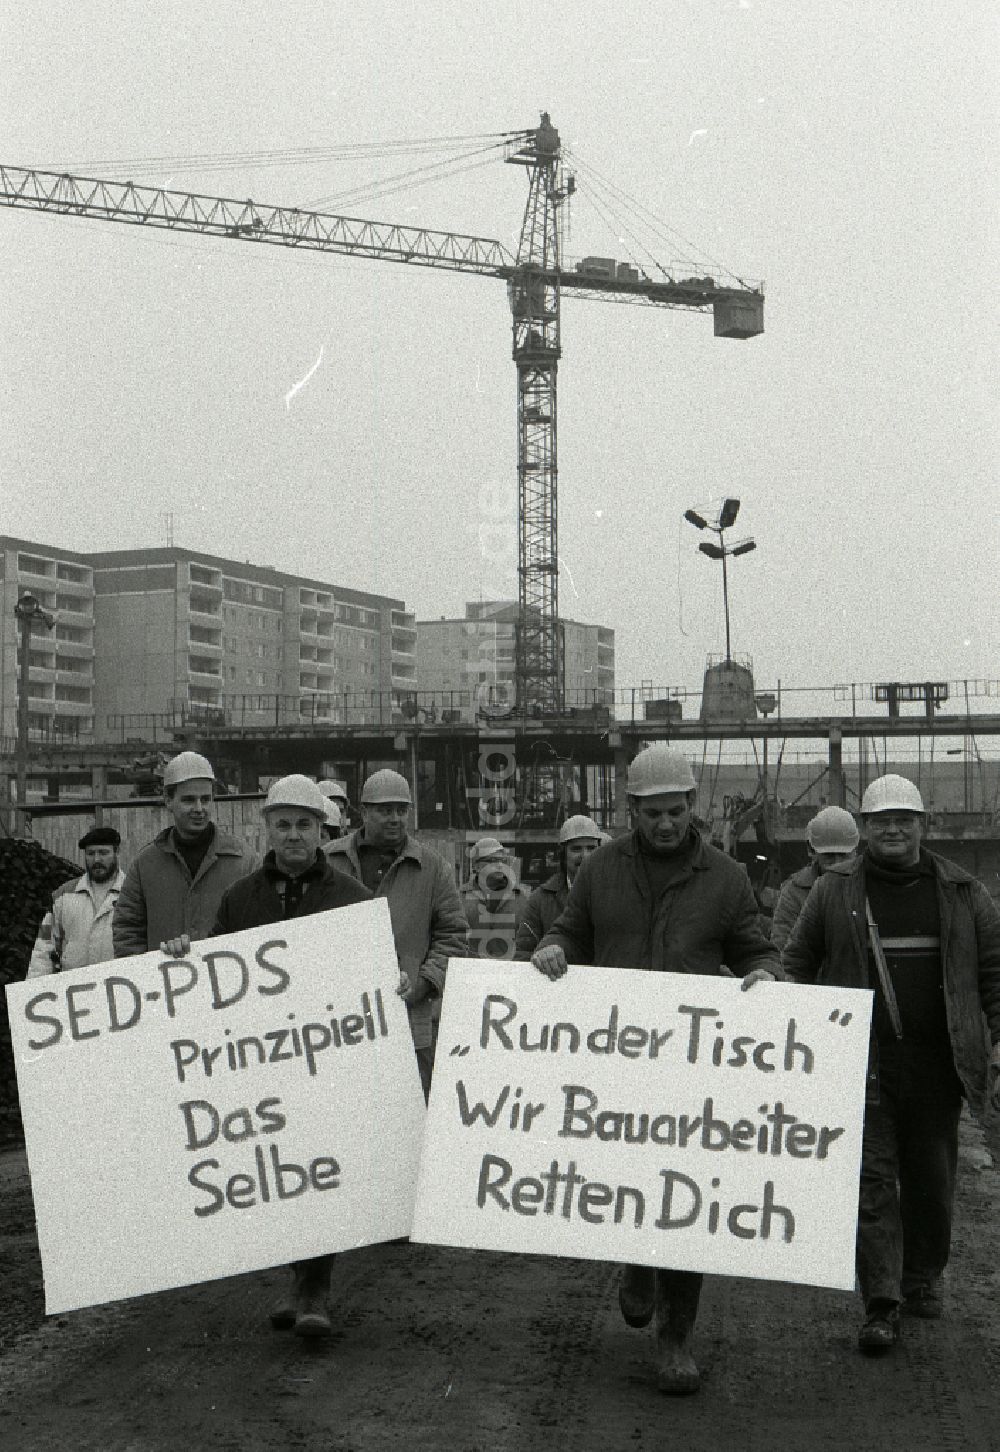 DDR-Fotoarchiv: Berlin - Transparent- Losung von Bauarbeitern im Neubauwohngebiet in Berlin in der DDR